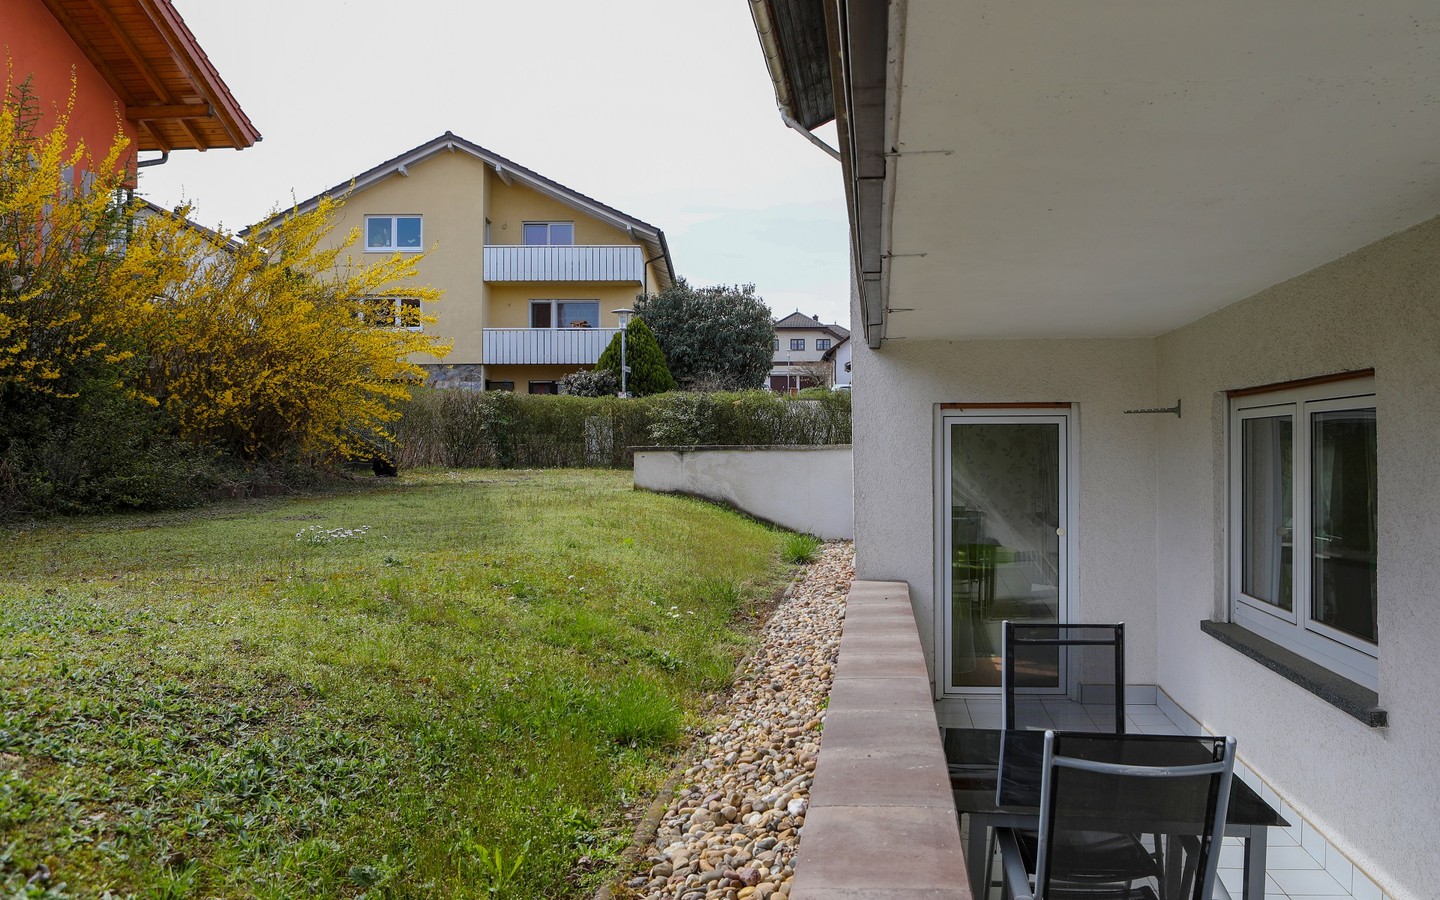 Terrasse - Raum für individuelle Wohn(t)räume: Attraktives und ausbaufähiges Zweifamilienhaus in Dielheim